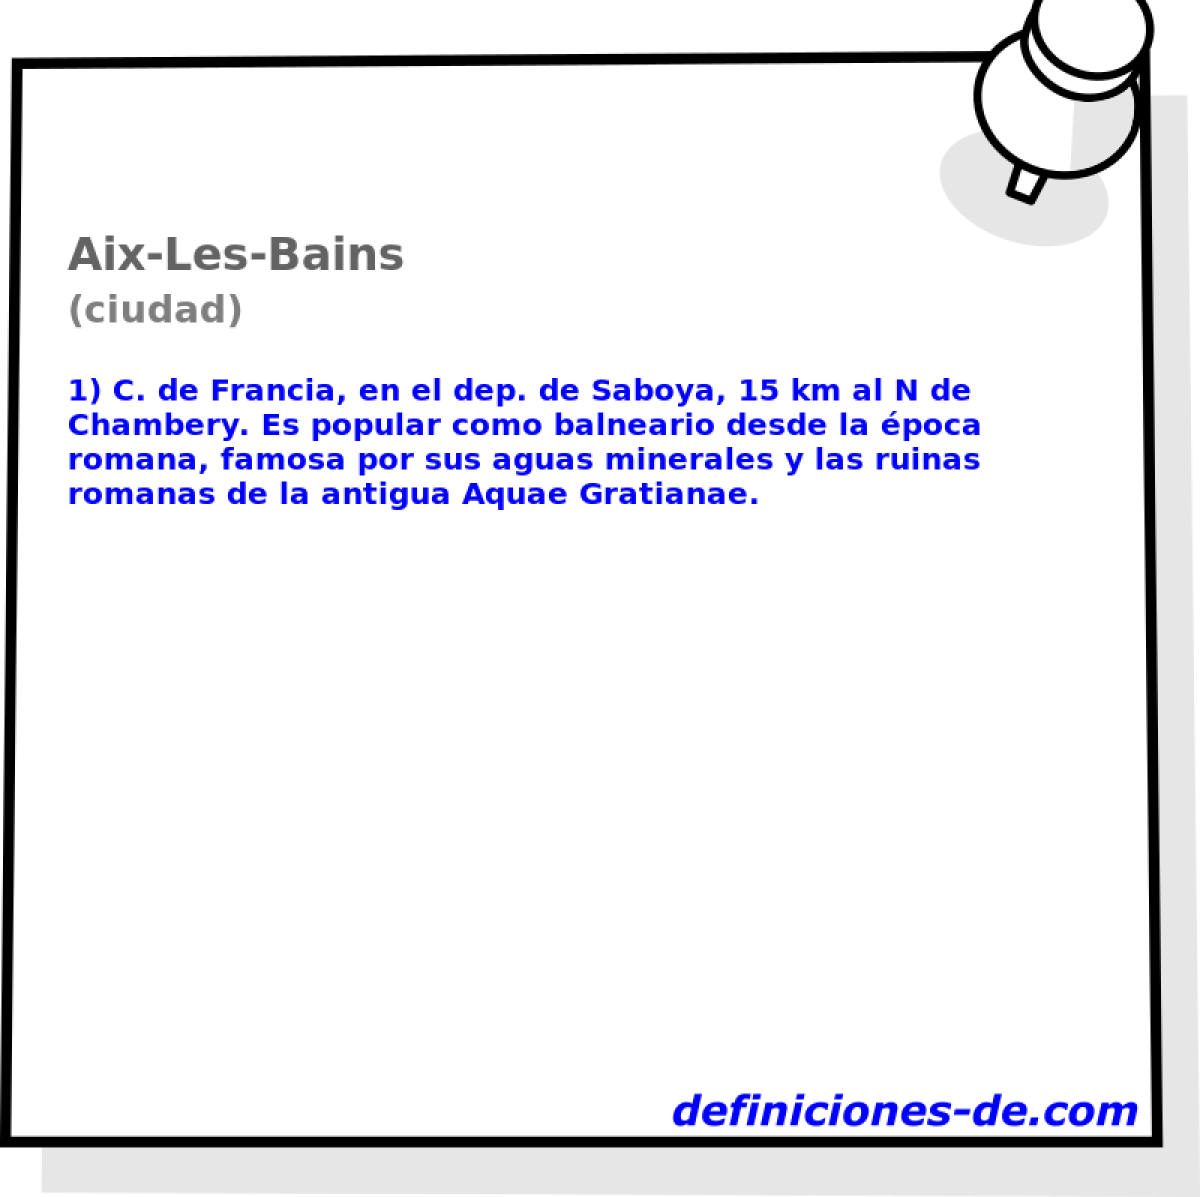 Aix-Les-Bains (ciudad)